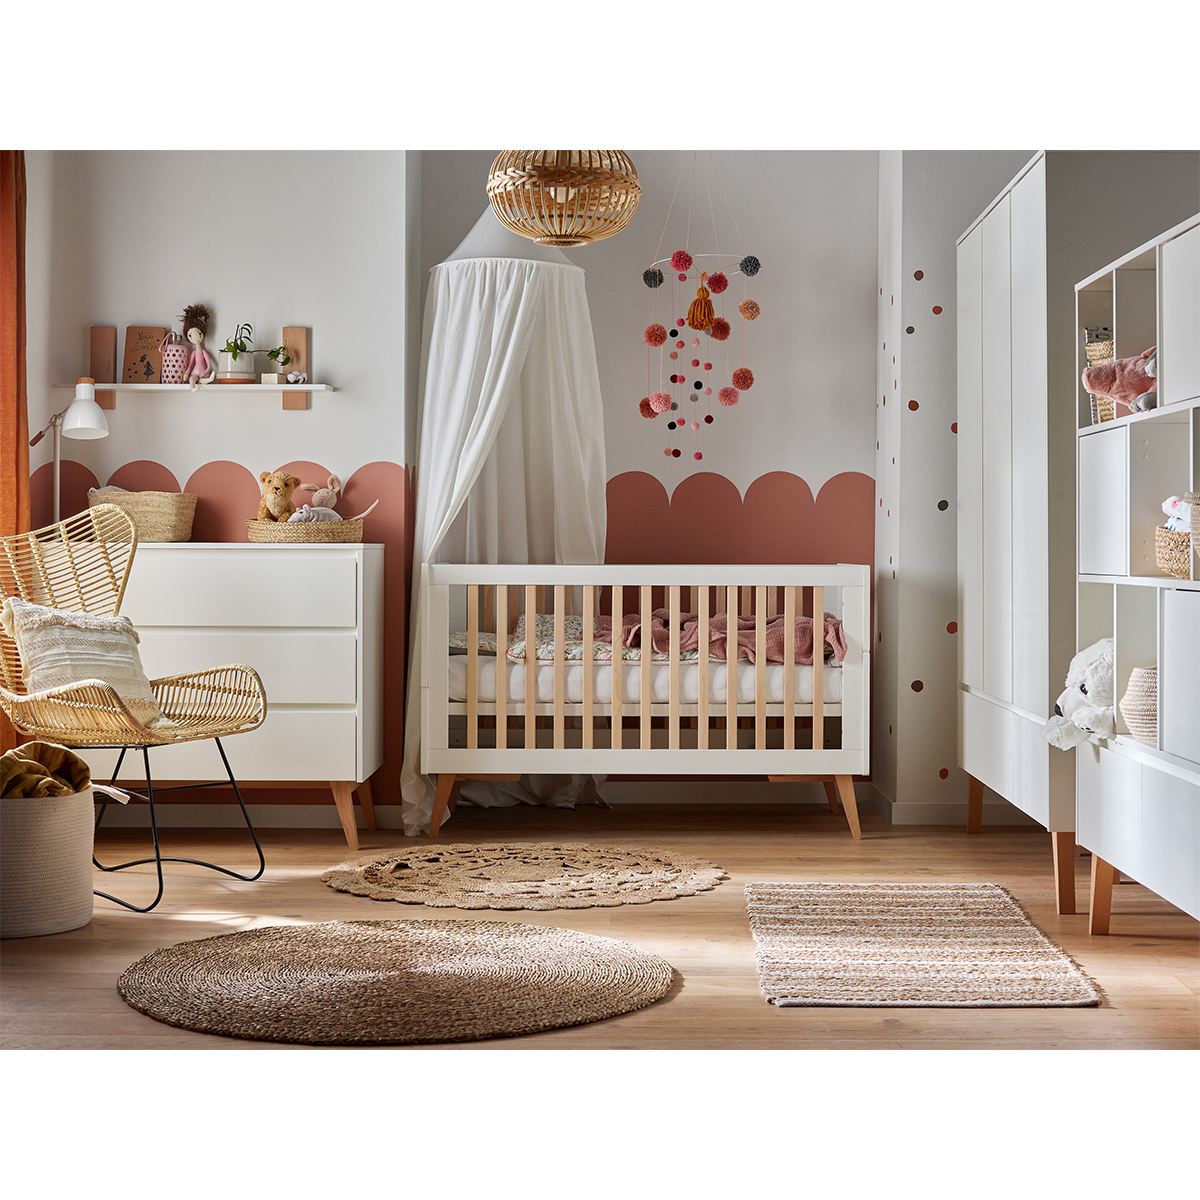 Chambre enfant complète Palfi : Lit enfant, armoire et commode